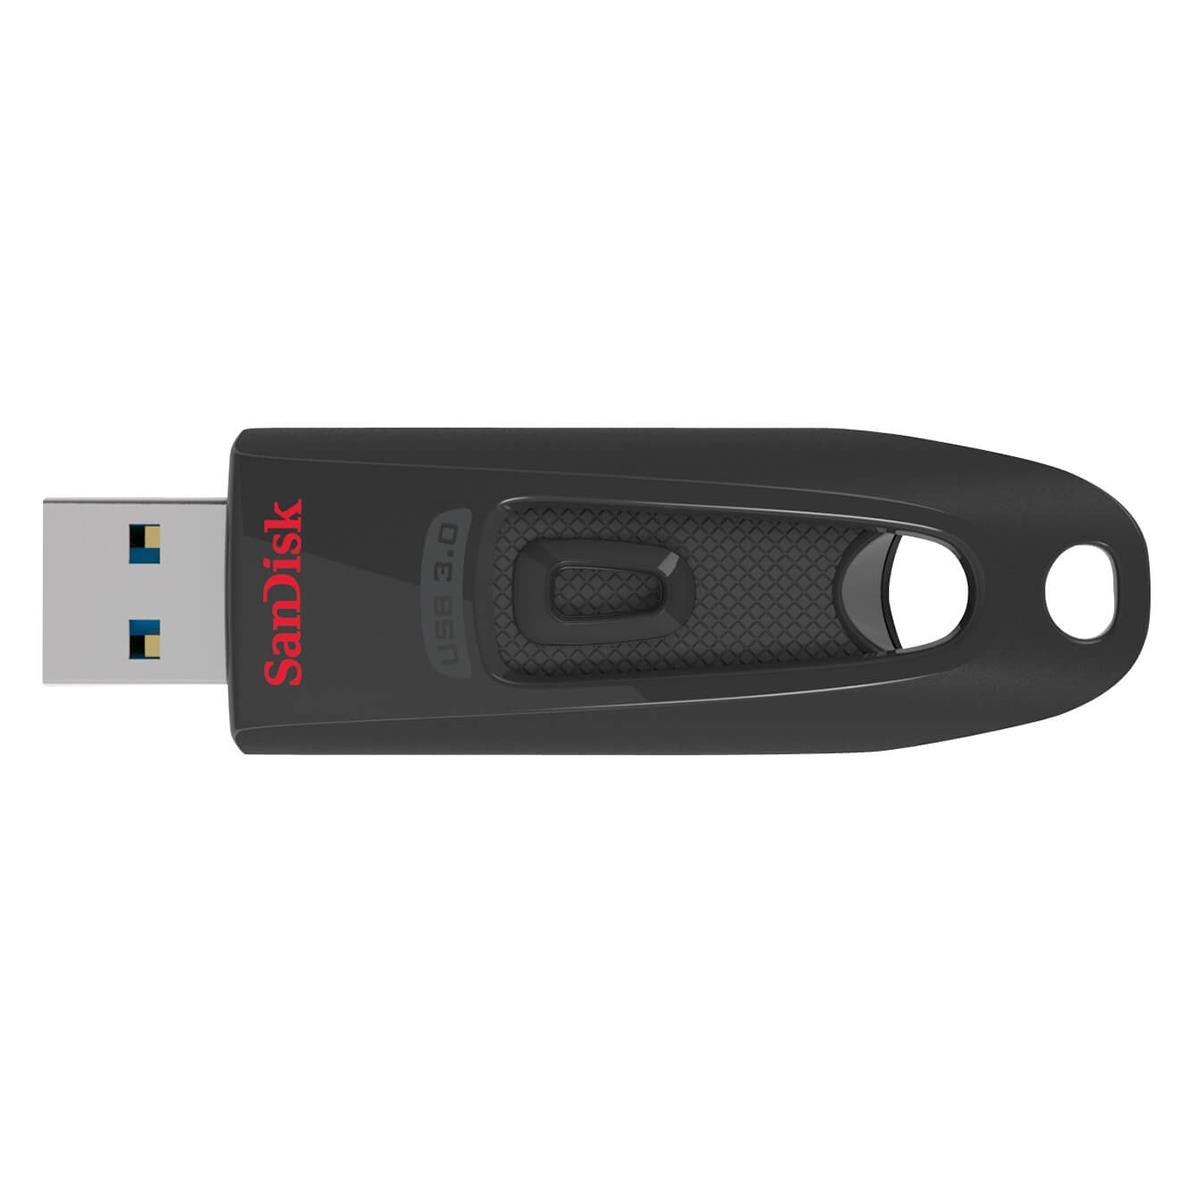 USB-minne Sandisk Ultra 3.0 100MB/s 32GB 36110109_4